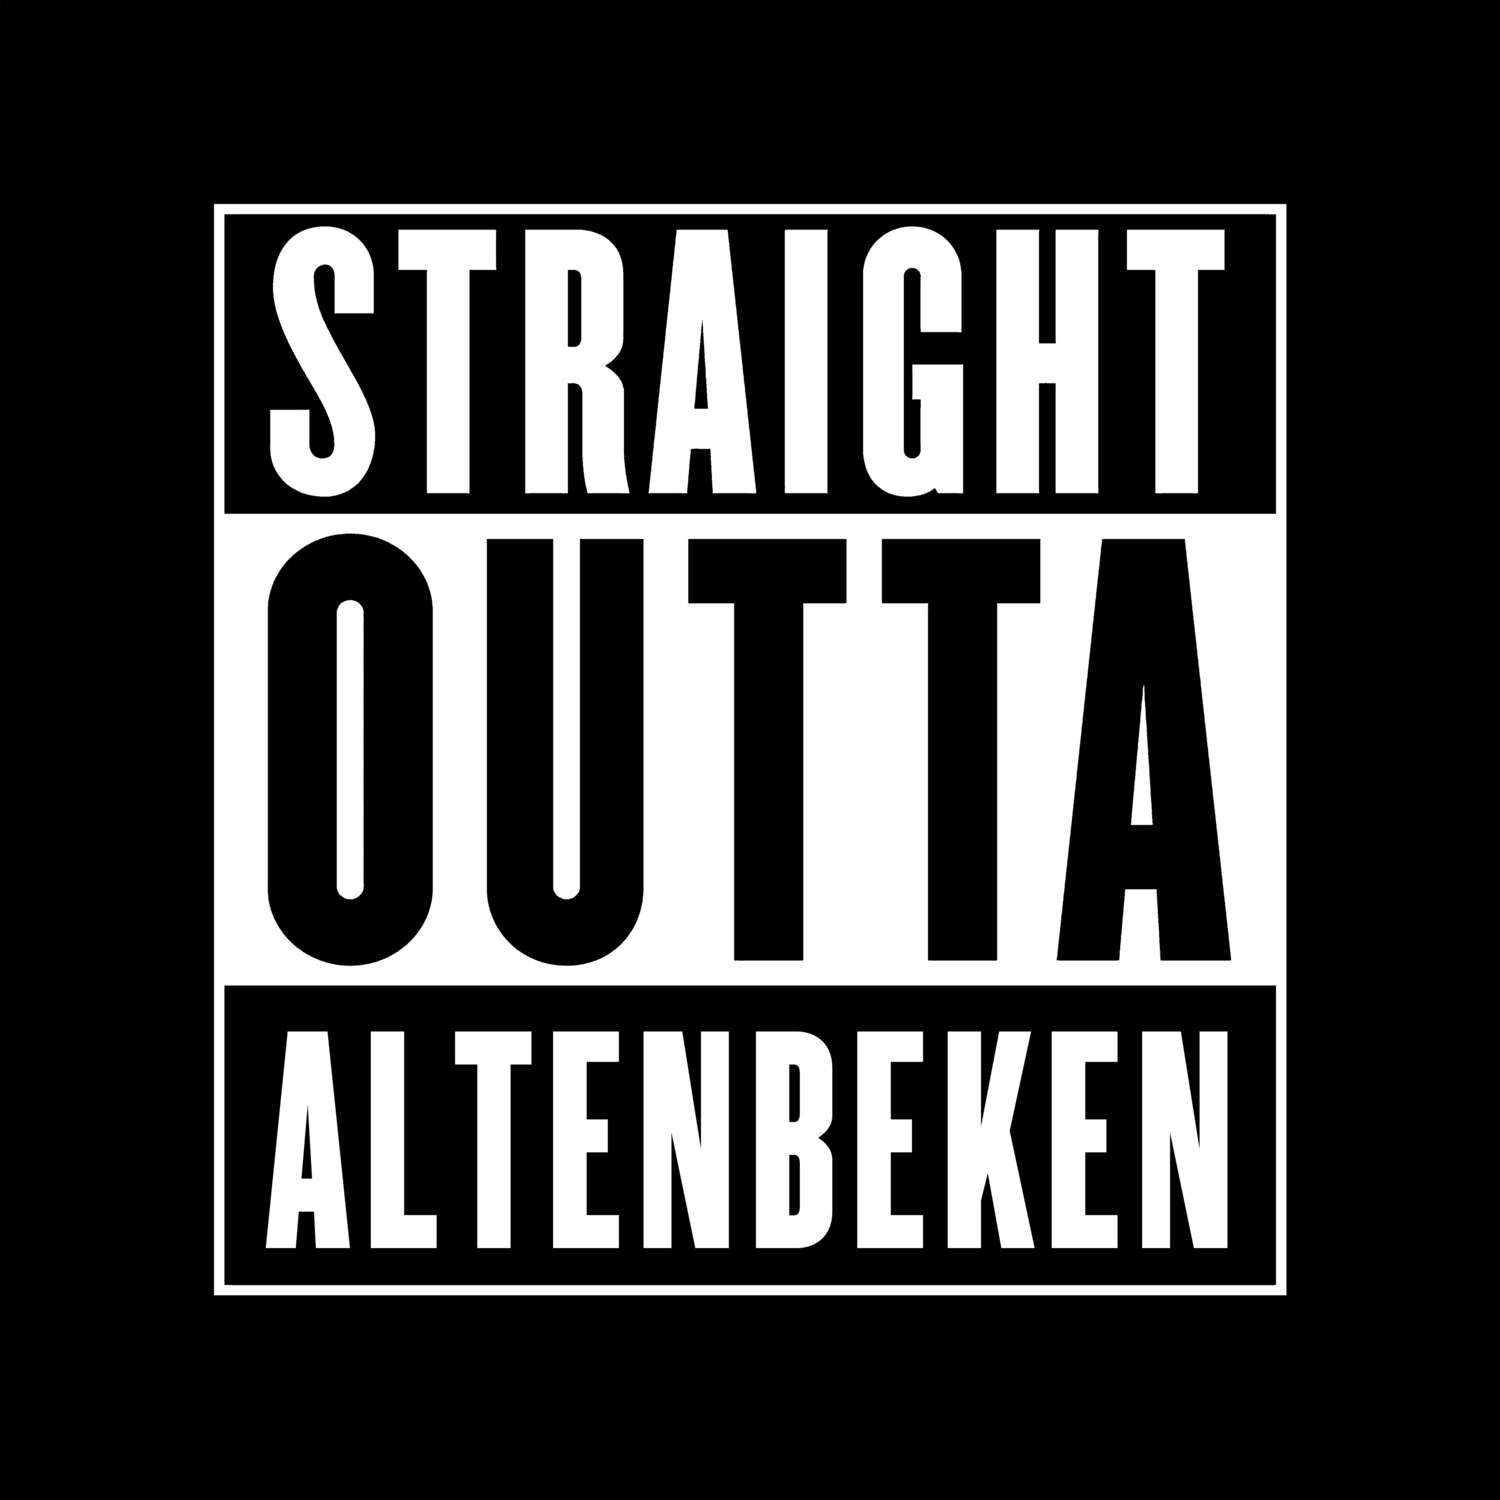 Altenbeken T-Shirt »Straight Outta«